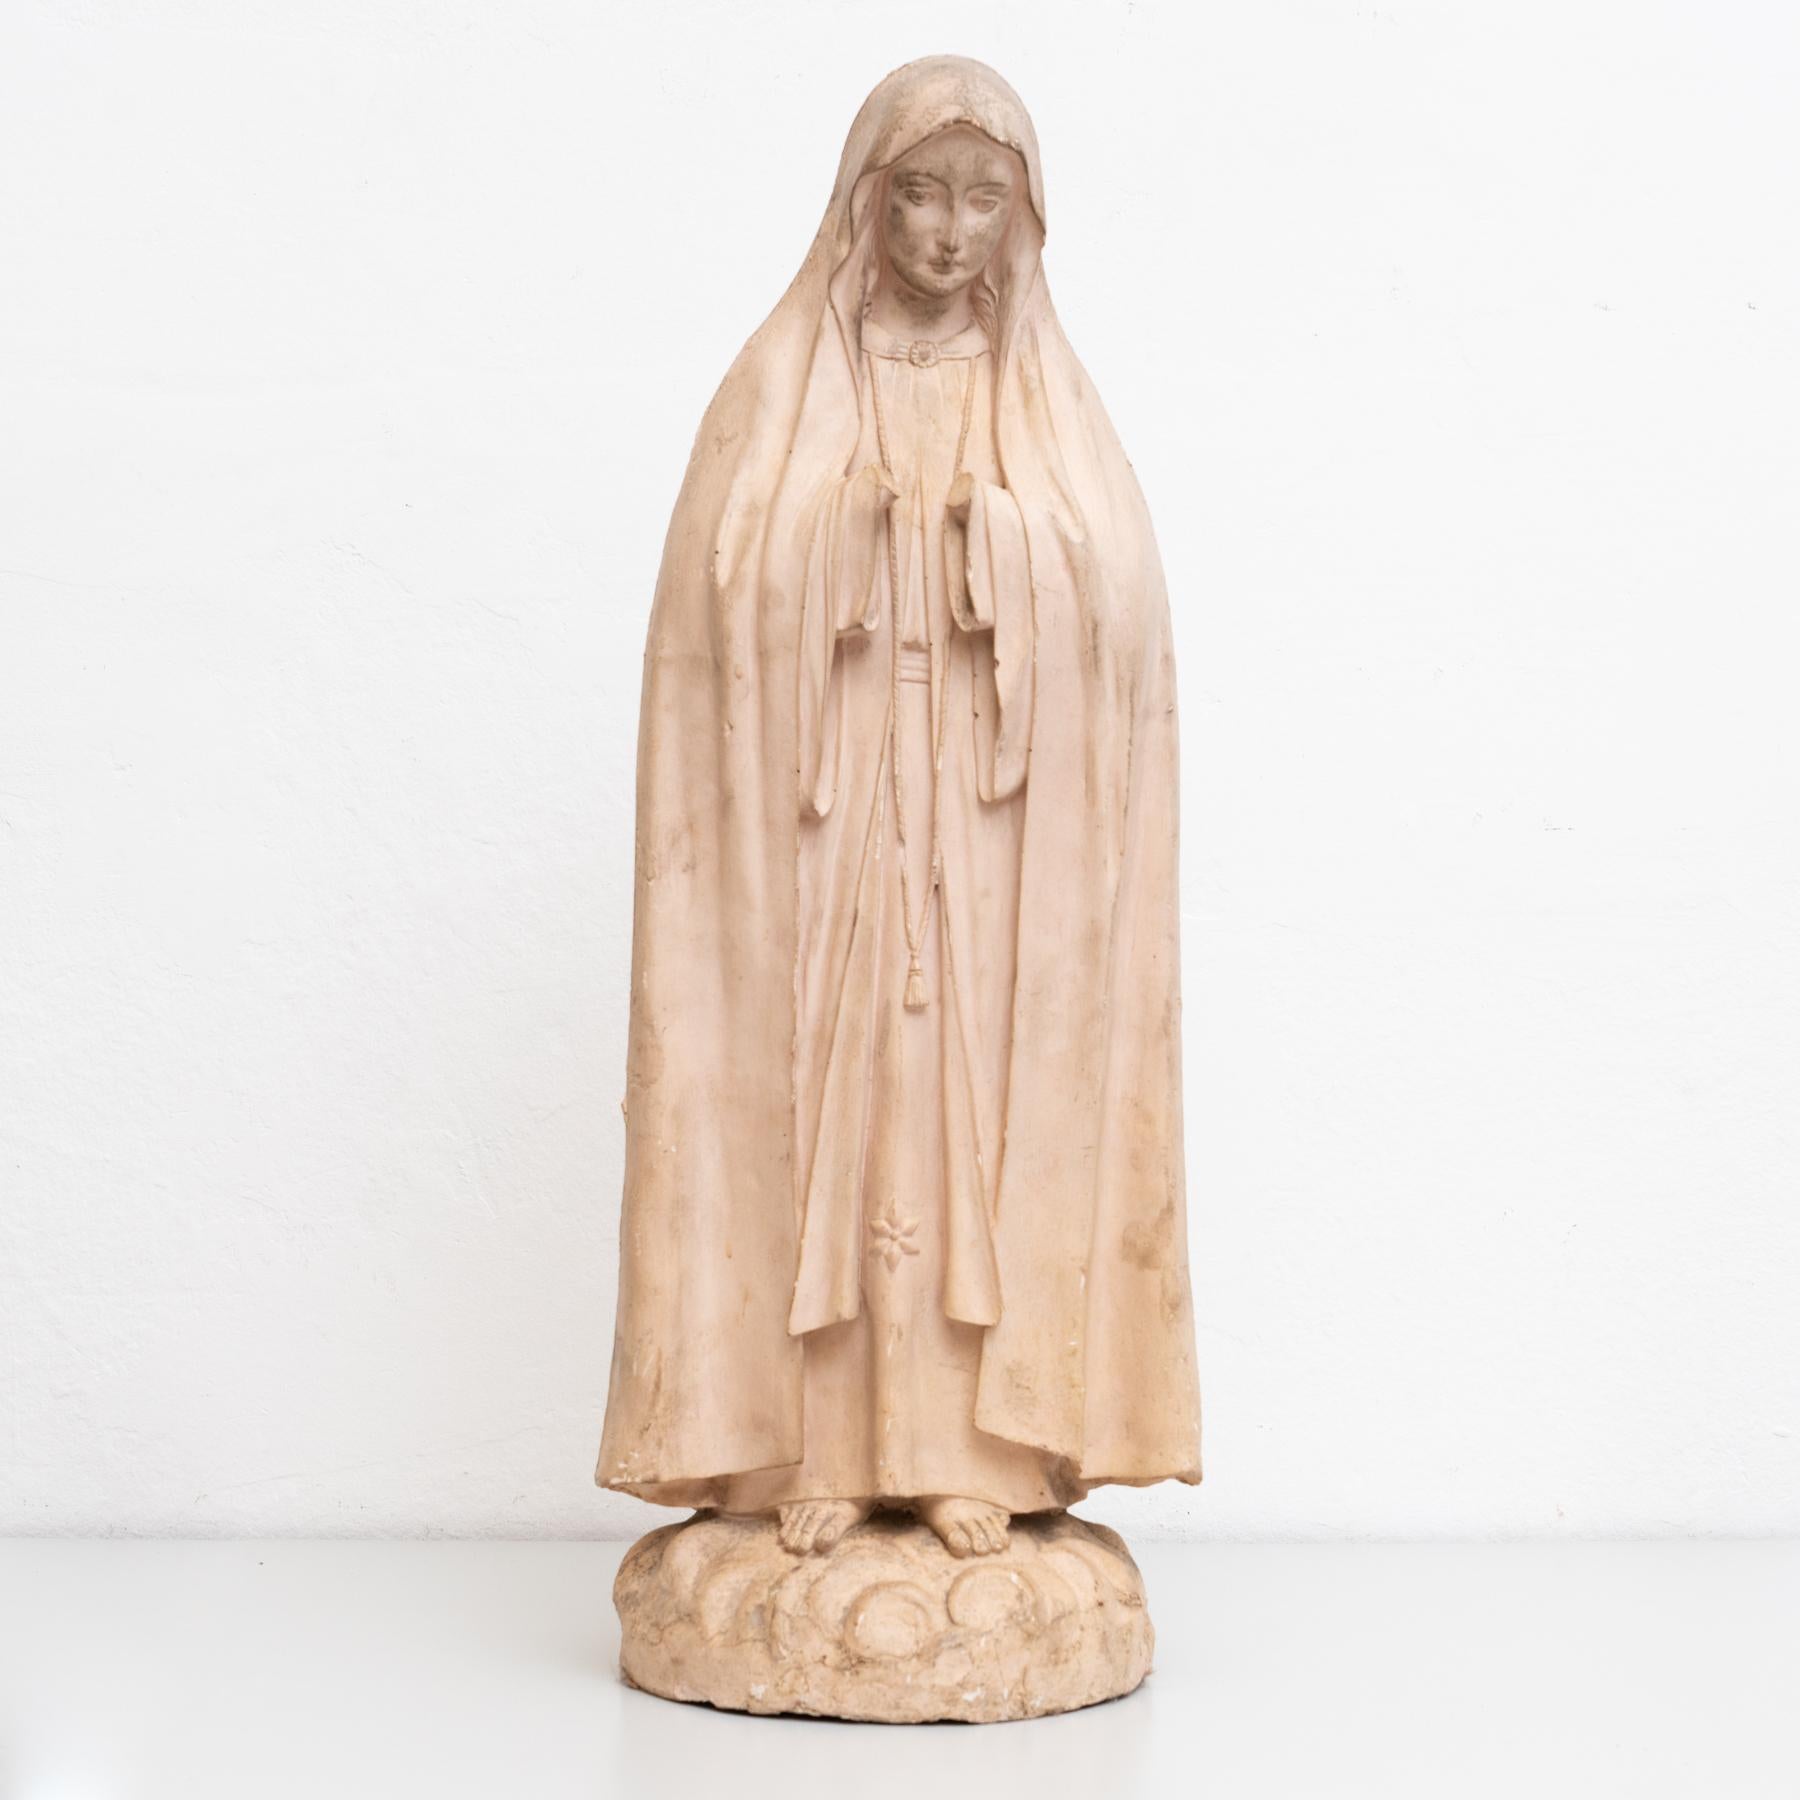 Figurine religieuse traditionnelle en plâtre représentant une vierge.

Fabriqué dans un atelier catalan traditionnel à Olot, en Espagne, vers 1950.

En état d'origine, avec une usure mineure conforme à l'âge et à l'utilisation, préservant une